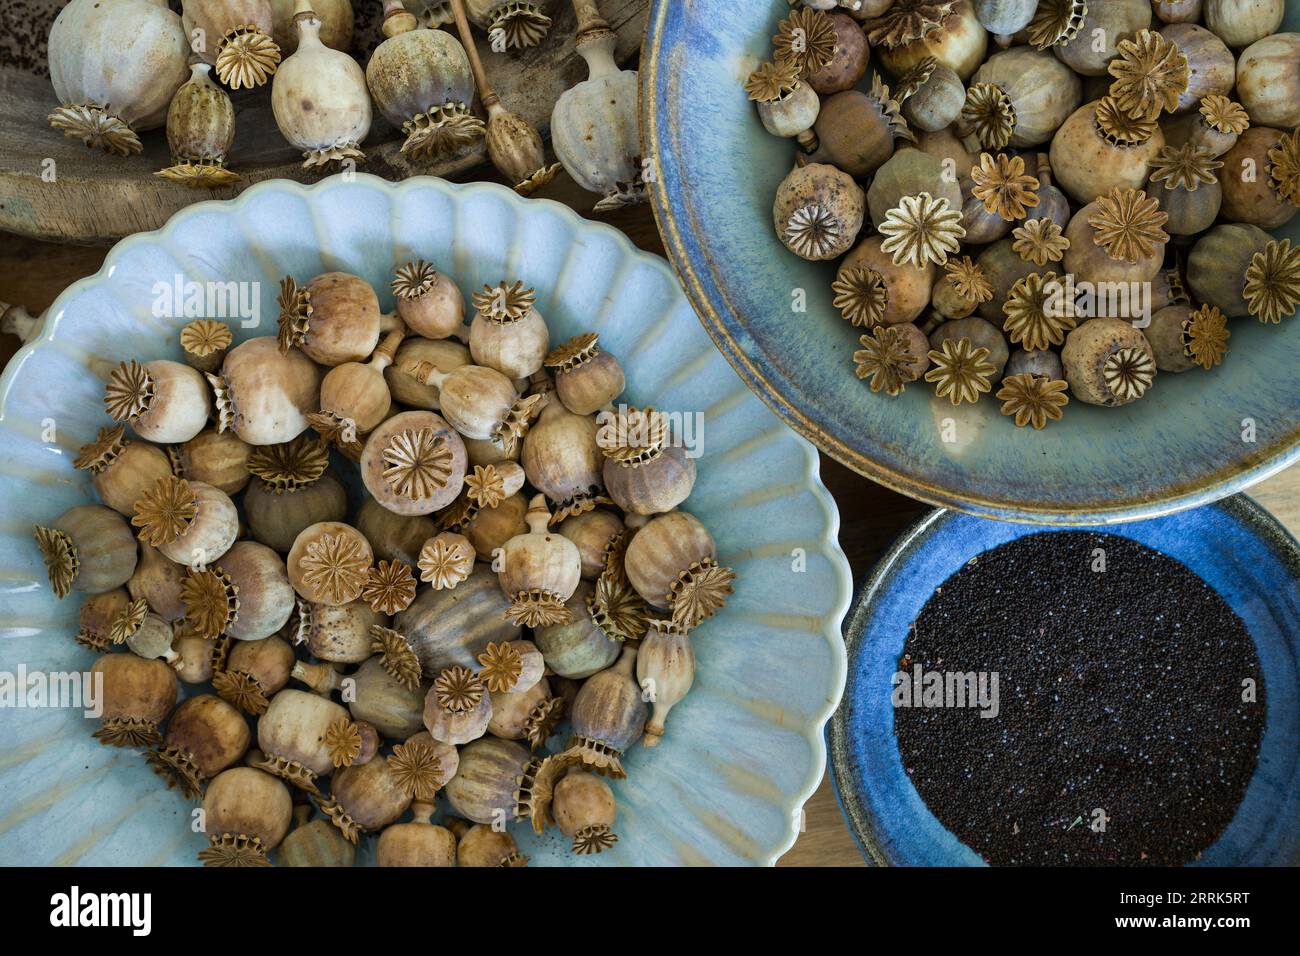 capsules de pavot séchées et graines dans des bols en faïence bleue, gros plan, vue de dessus Banque D'Images